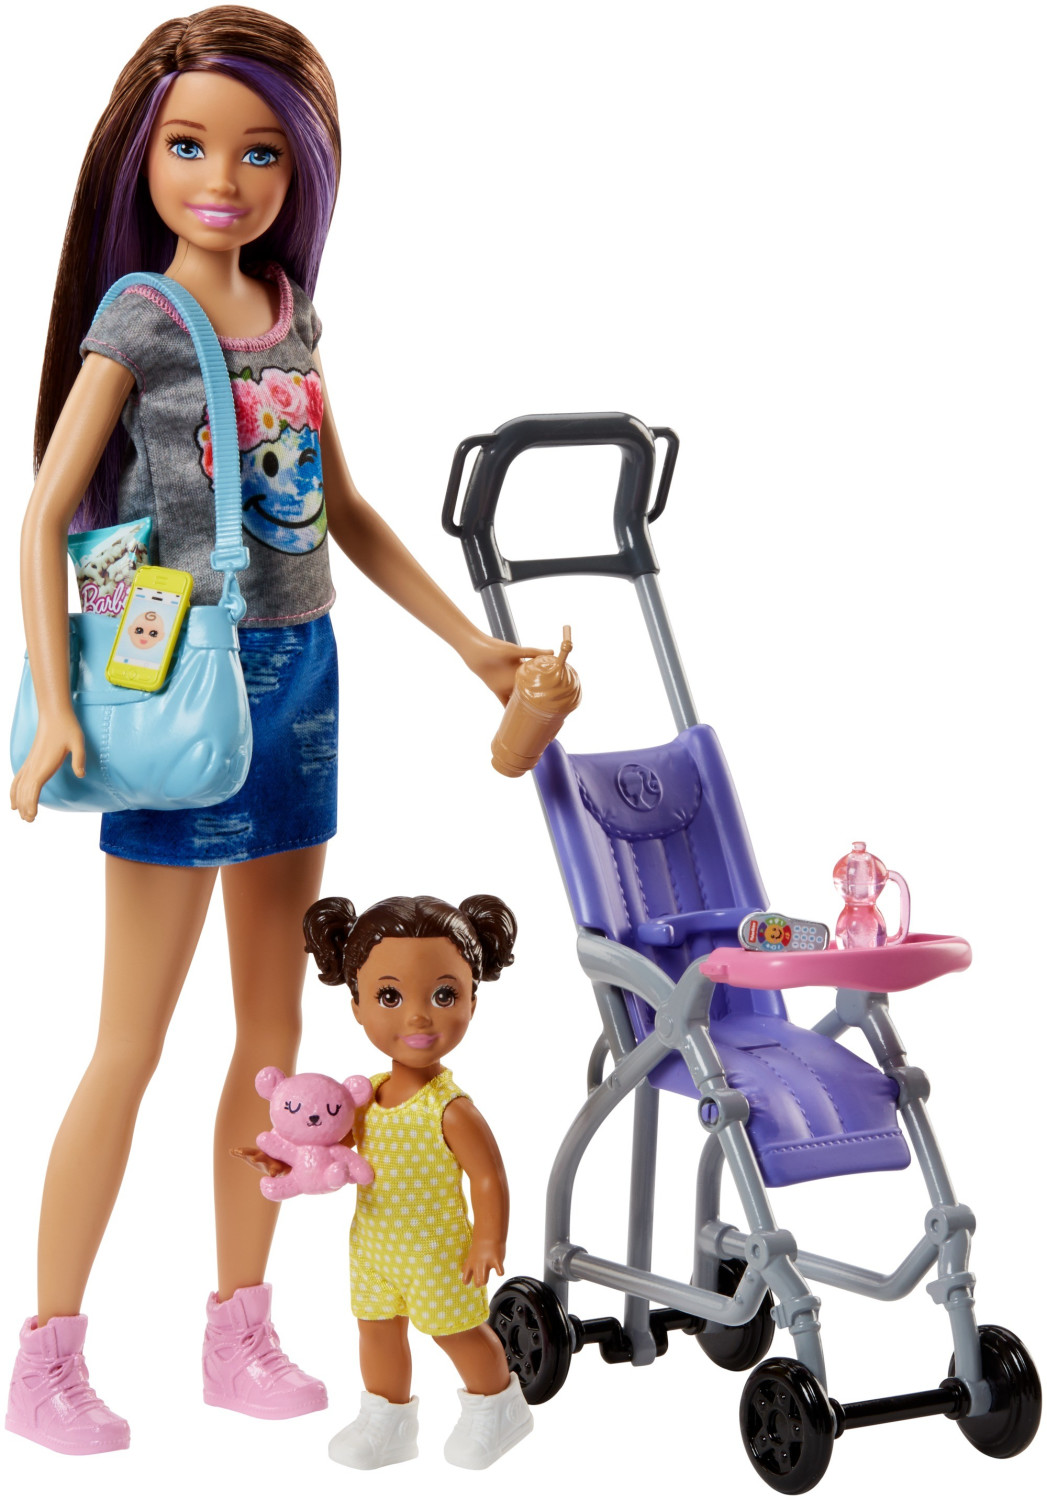 Cadeau entreprise - Barbie Glitz jouet enfant fille pas cher